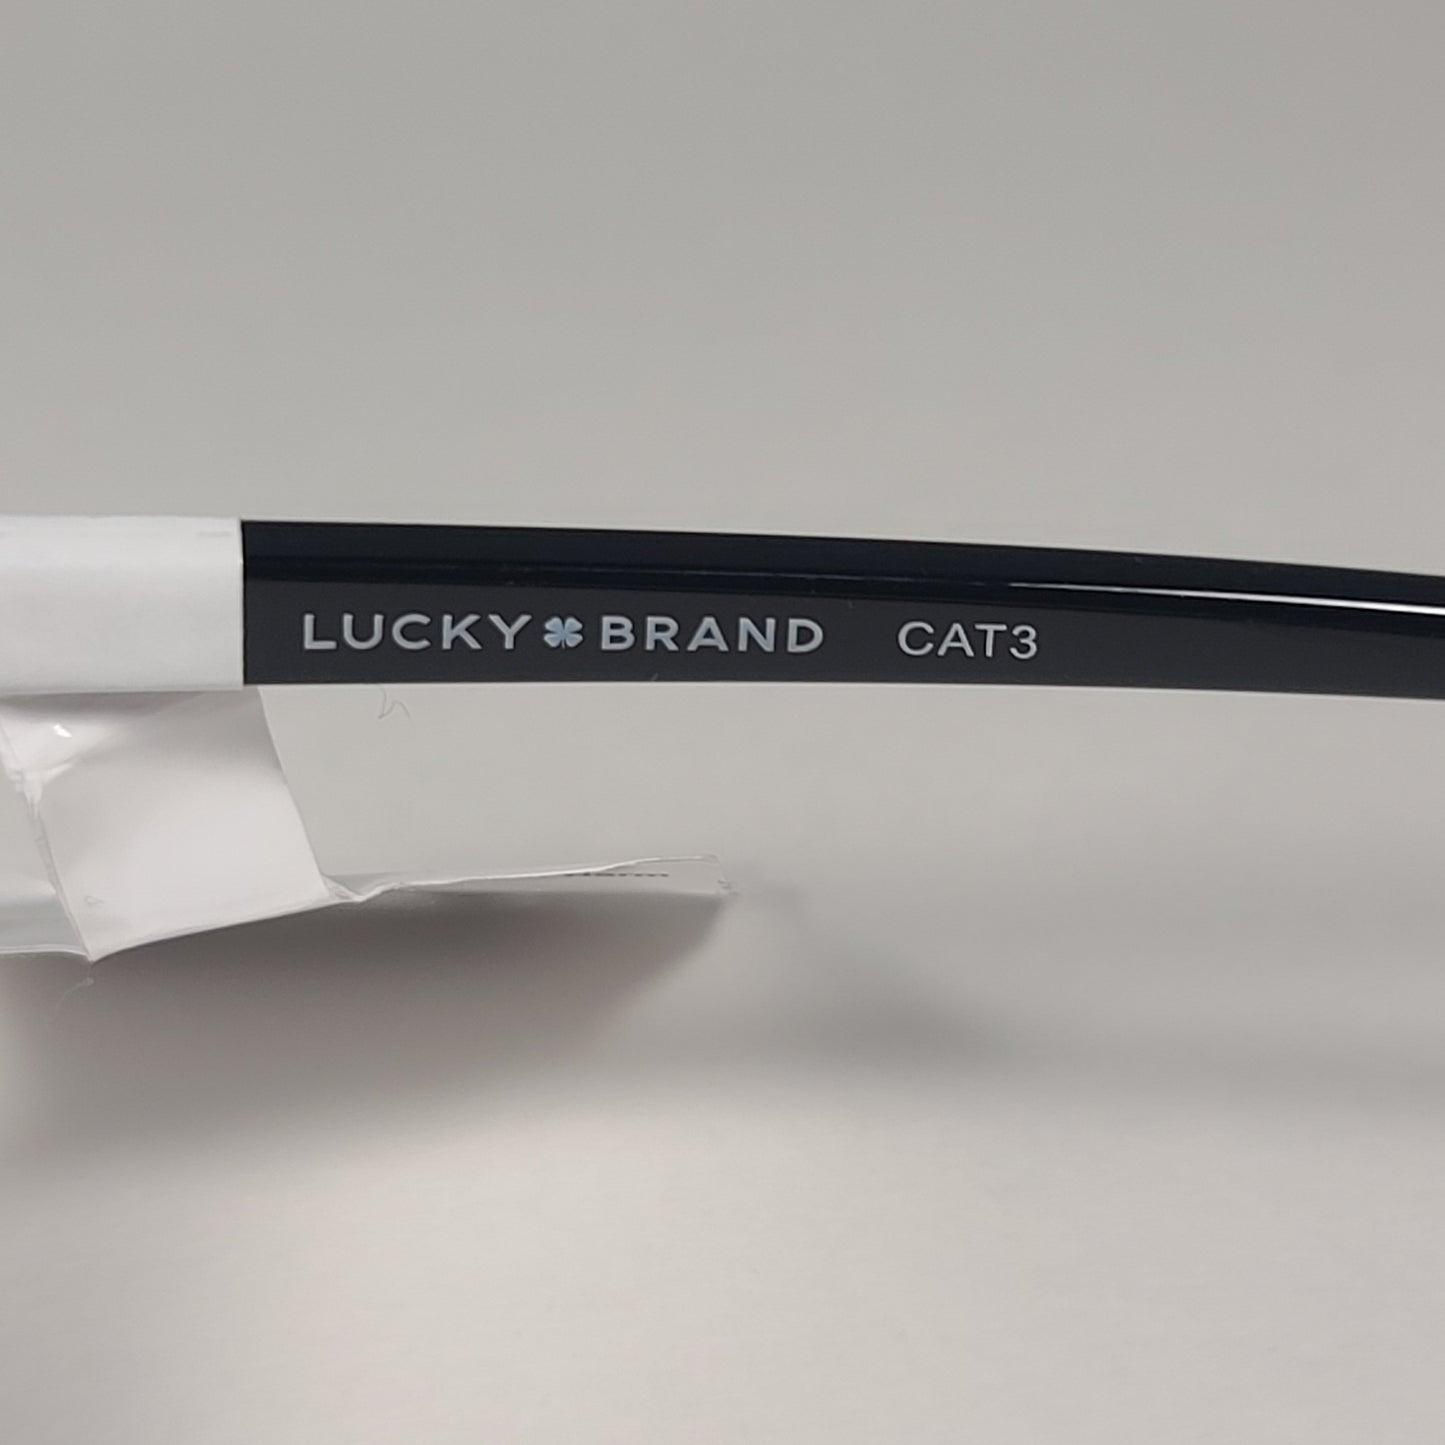 Lucky Brand SLBD101 Cat Eye Sunglasses Shiny Black Silver Frame Gray Gradient Lens - Sunglasses